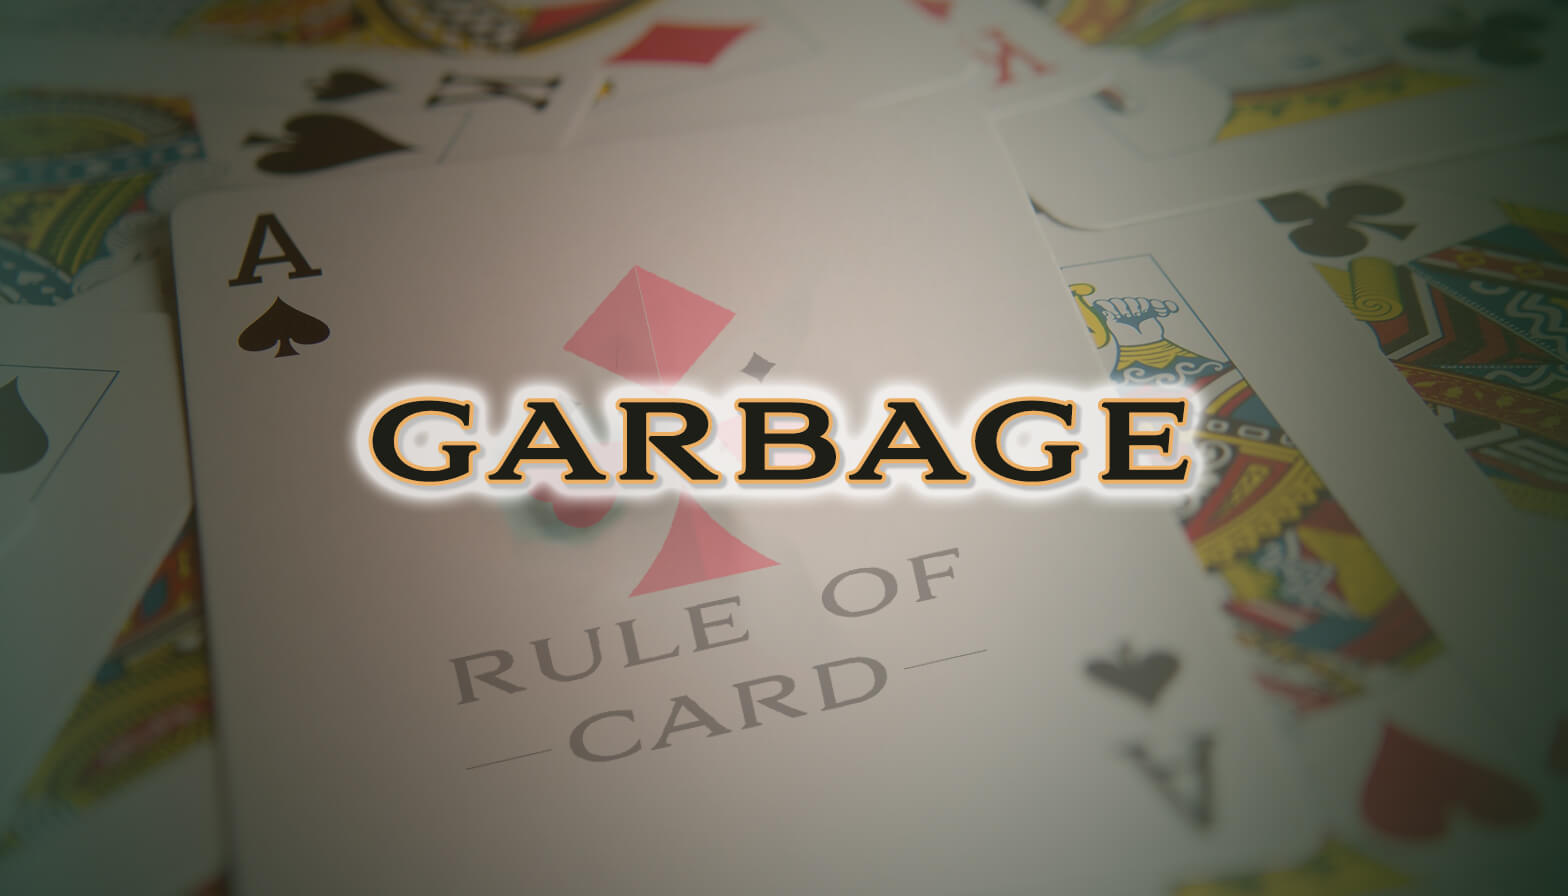 Playing the card game Garbage